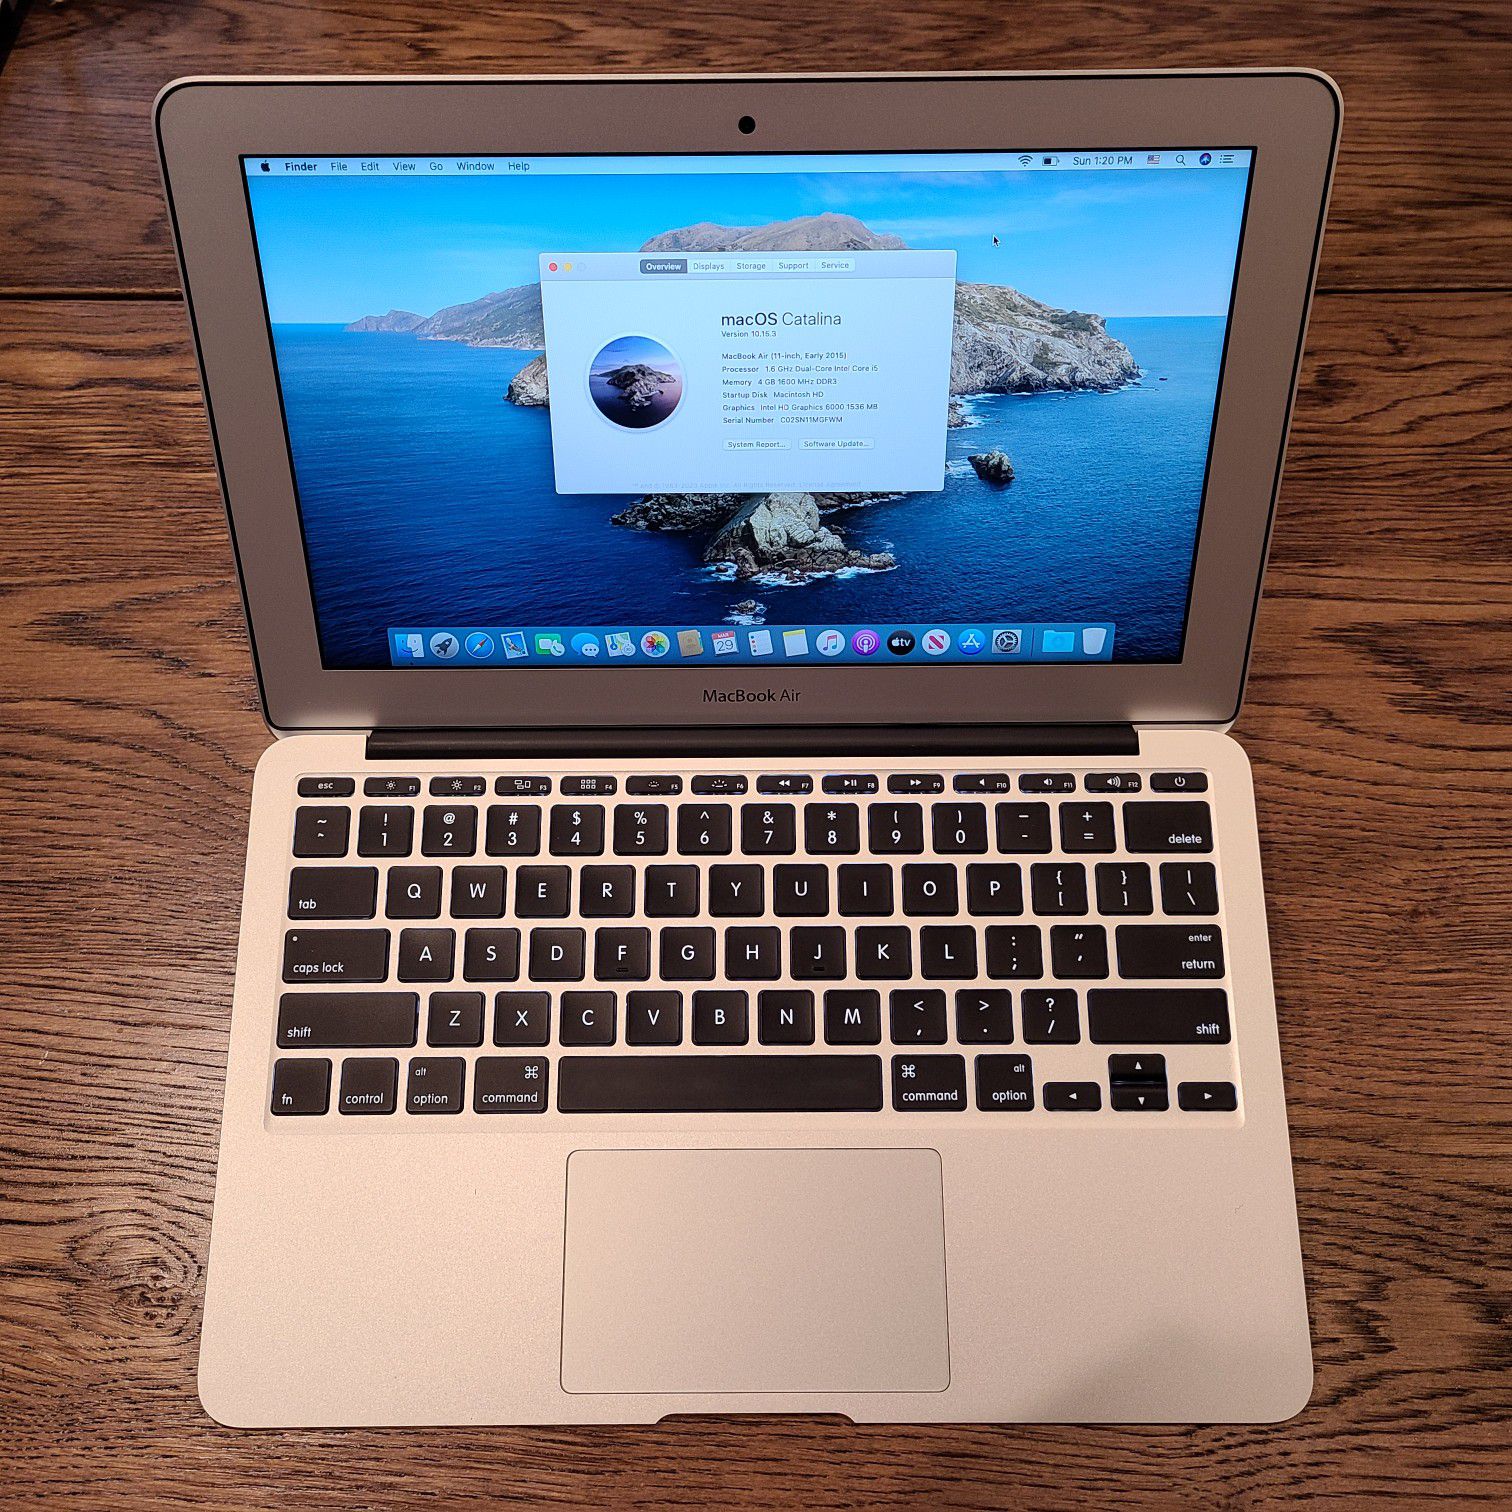 Apple Macbook Air 11" 2015 - Intel Core i5, 4GB RAM, 128GB SSD